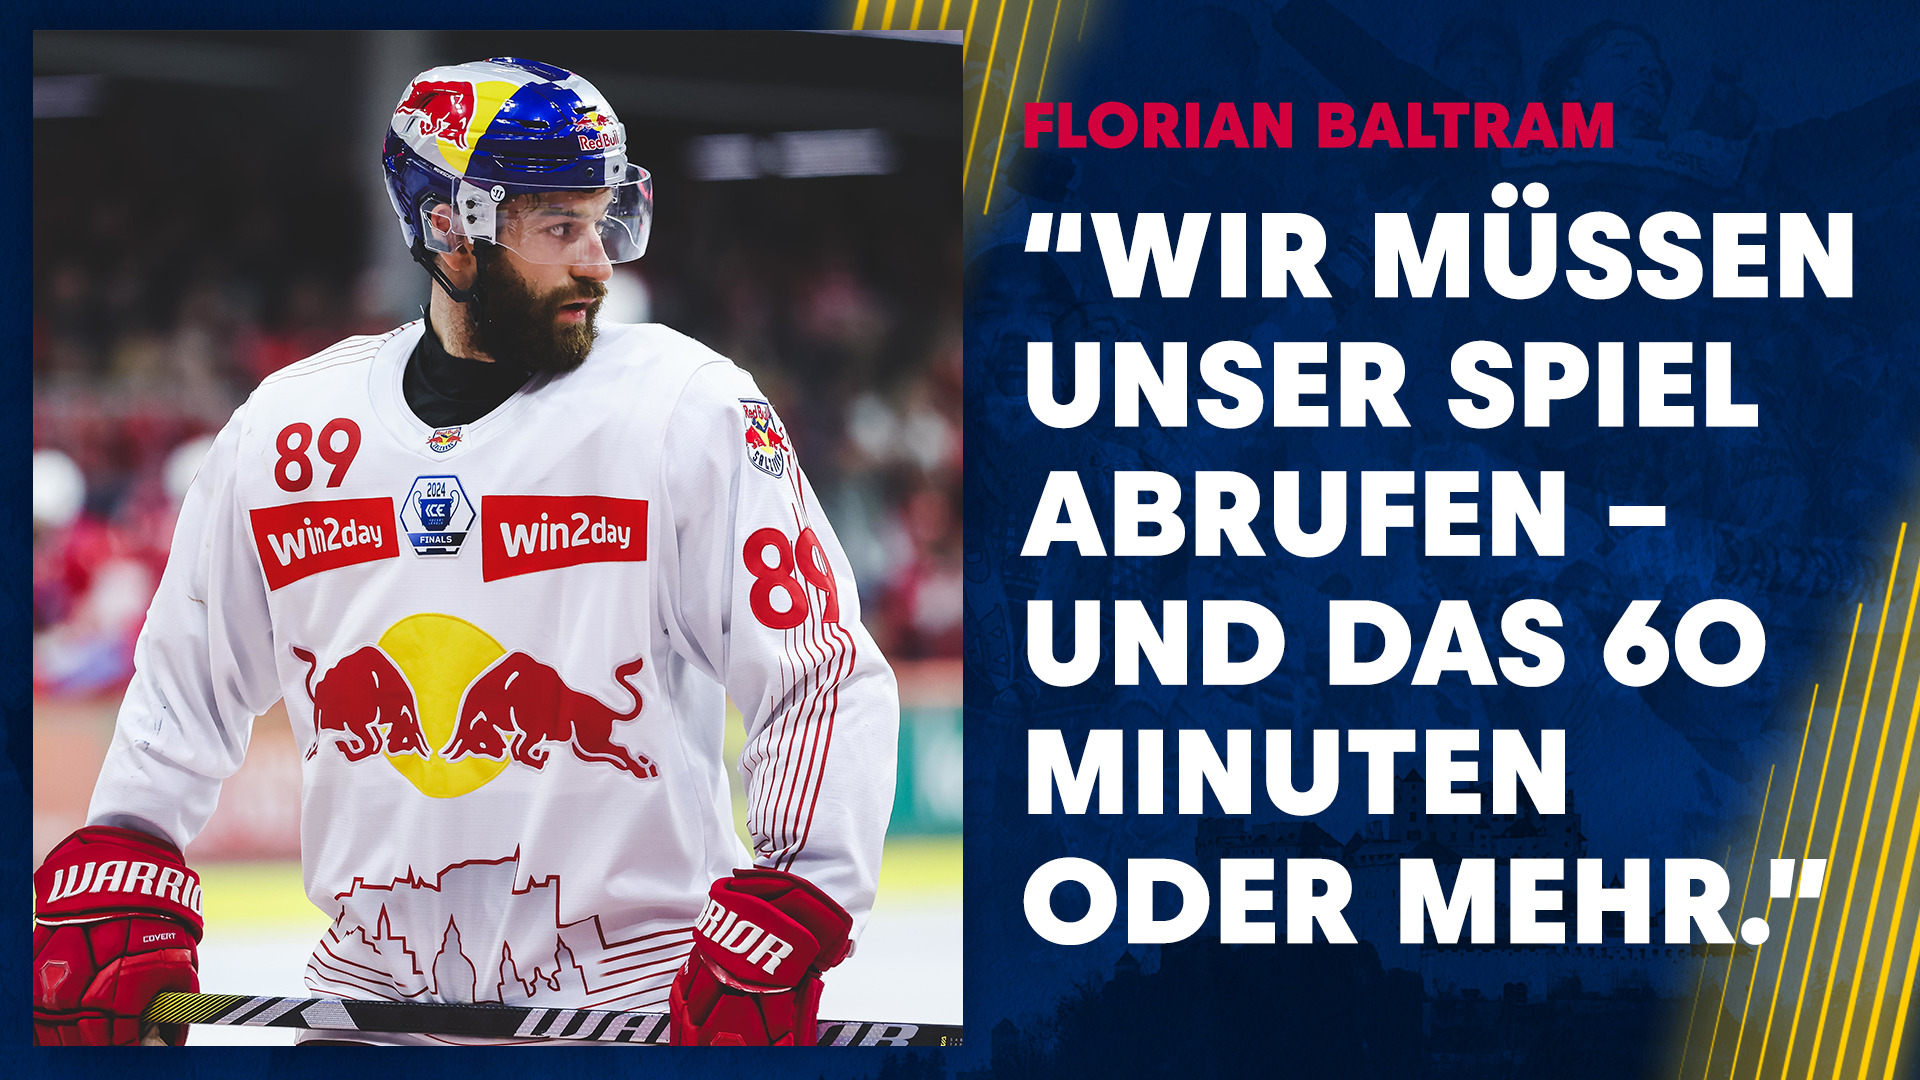 Statement: Florian Baltram